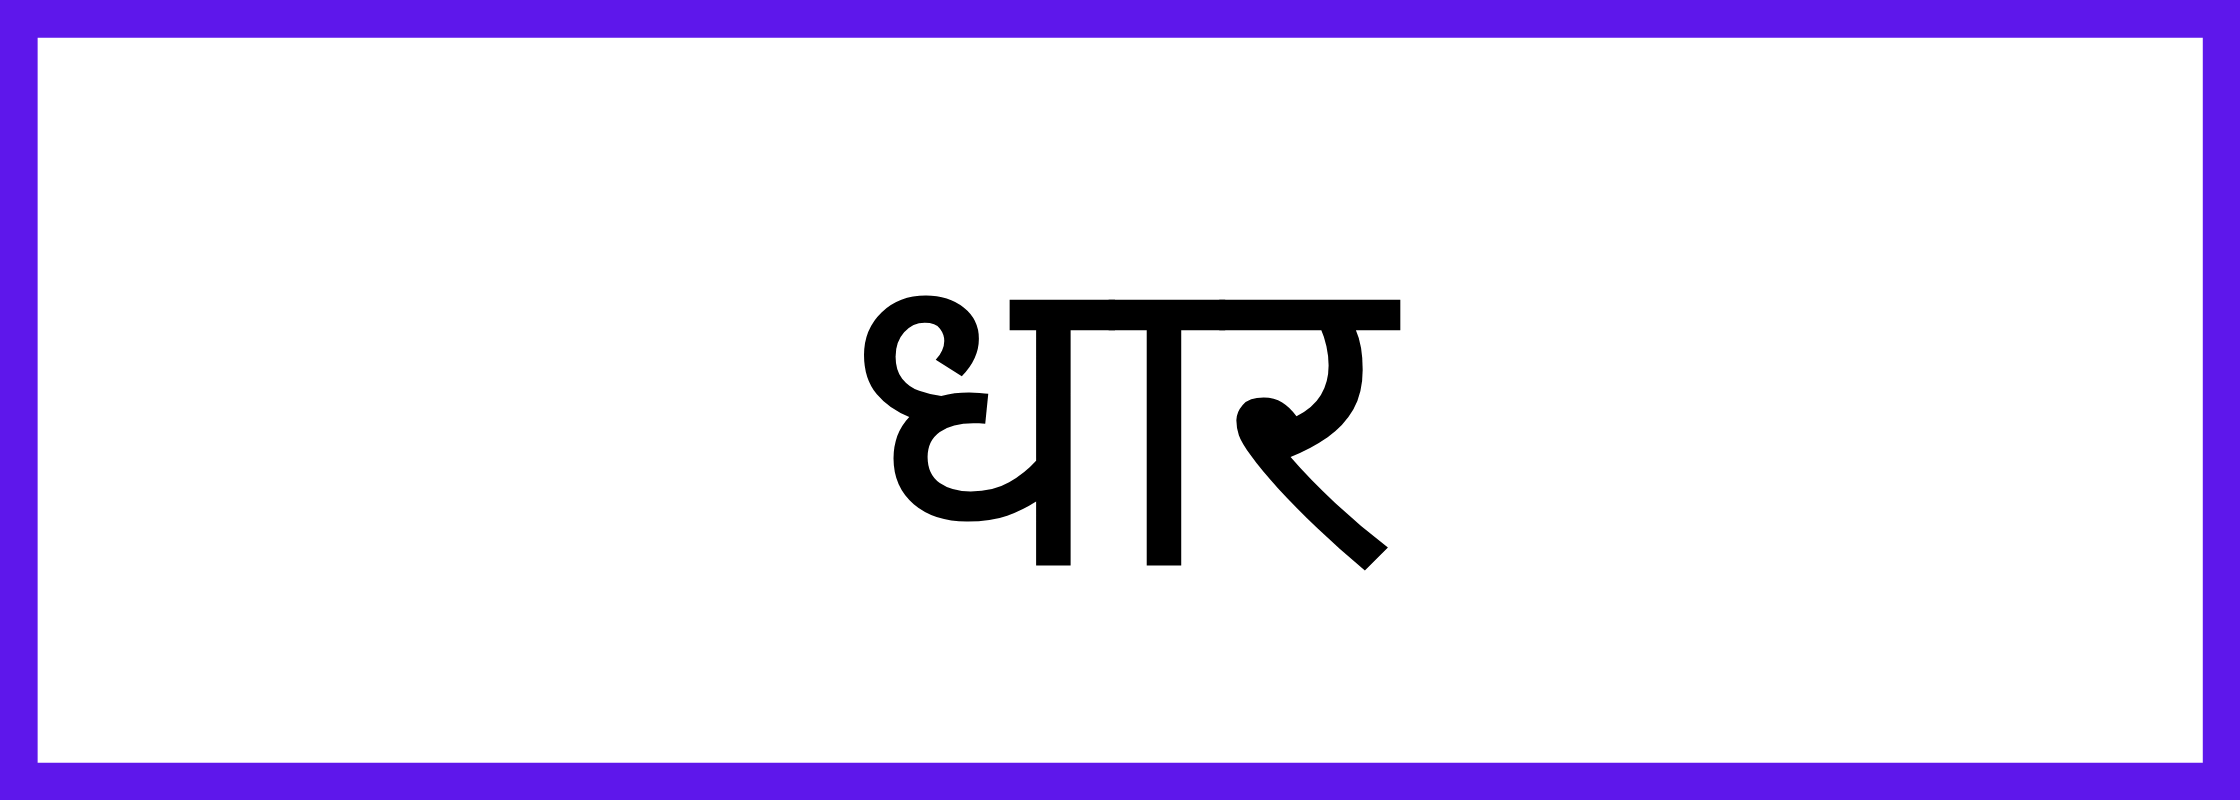 धार-Dhar-mandi-bhav